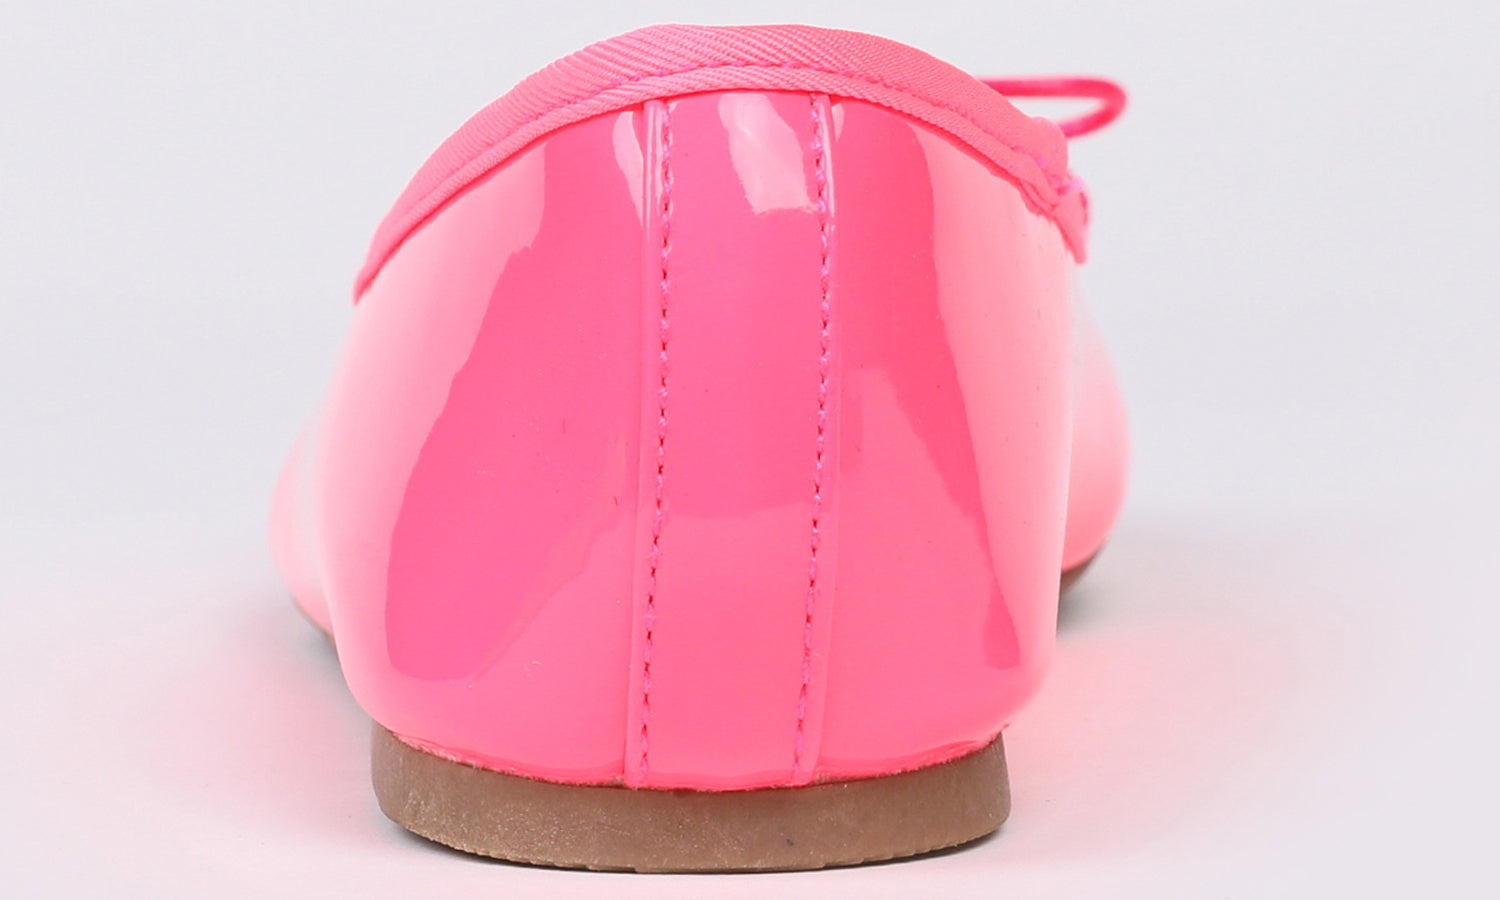 Feversole Women's Macaroon Neon Pink Memory Foam Cushion Insock Patent Ballet Flat